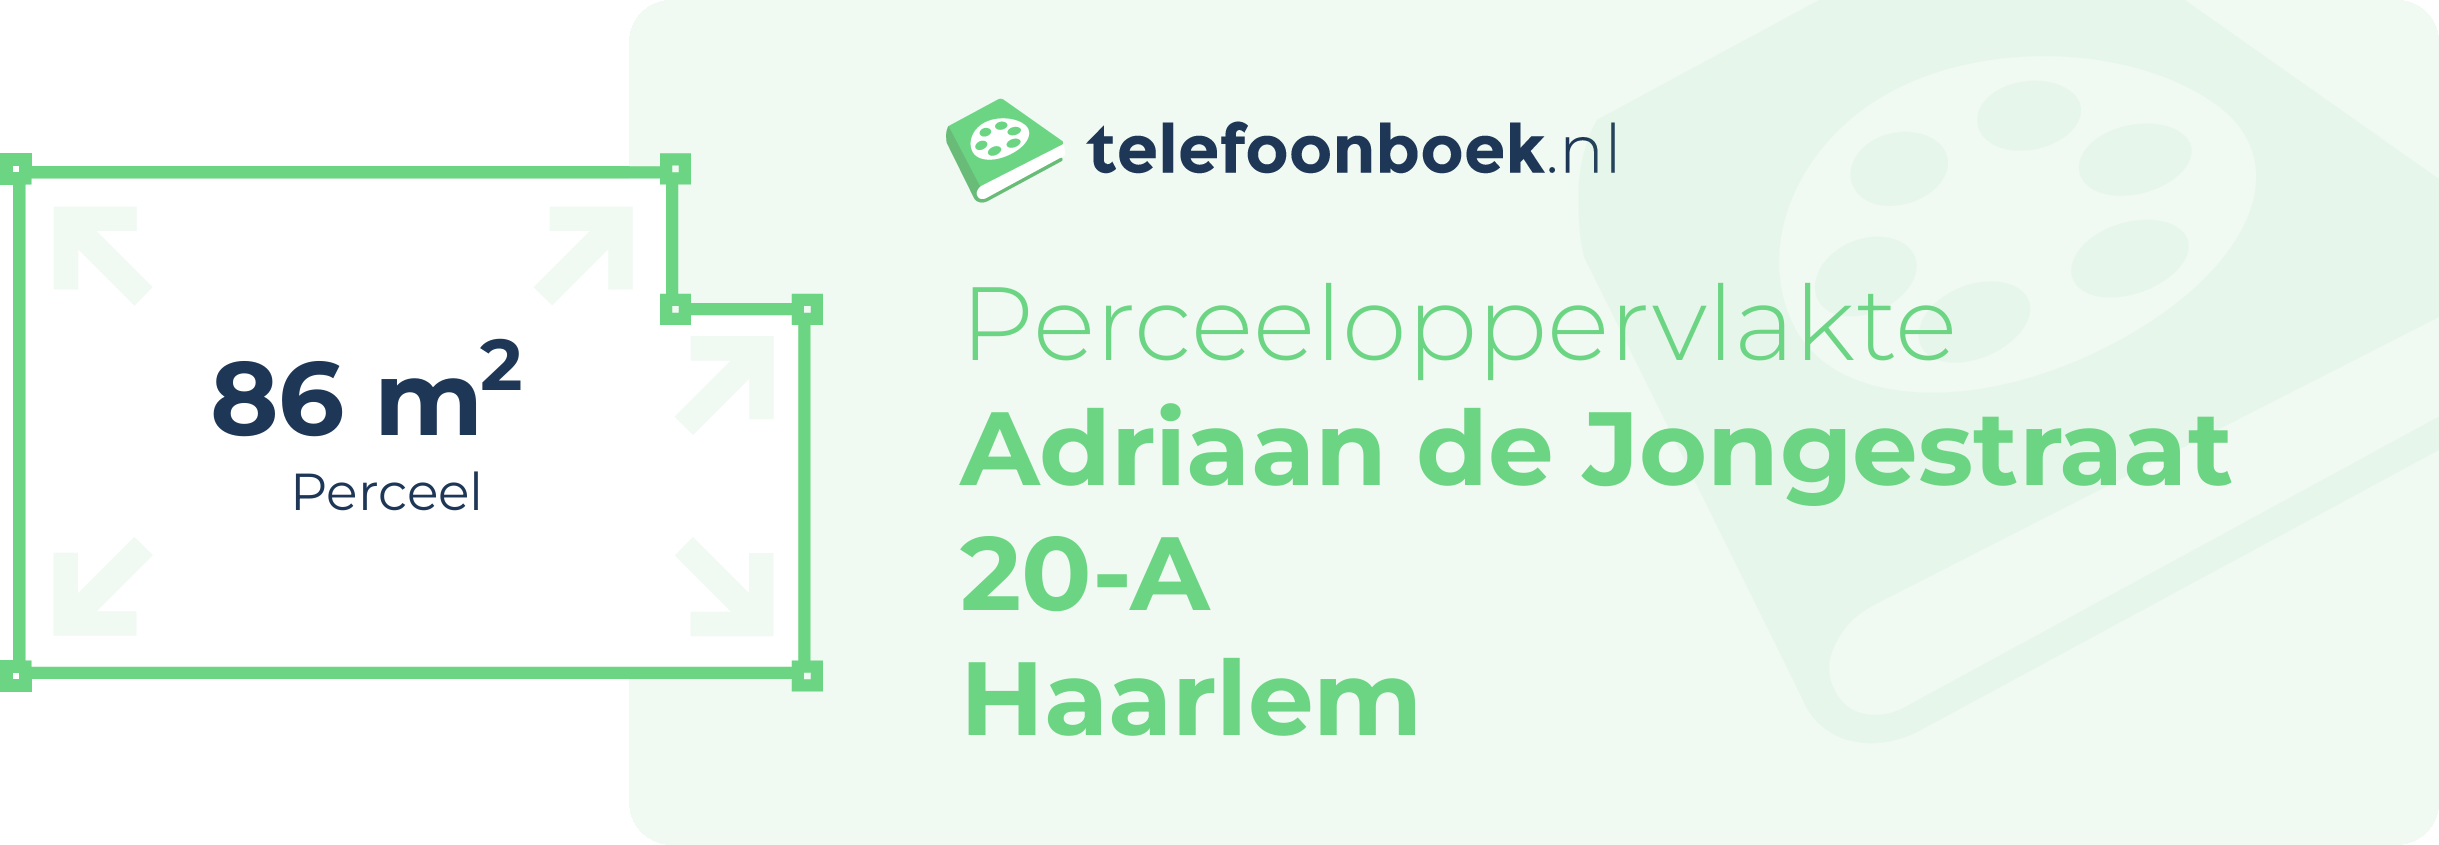 Perceeloppervlakte Adriaan De Jongestraat 20-A Haarlem